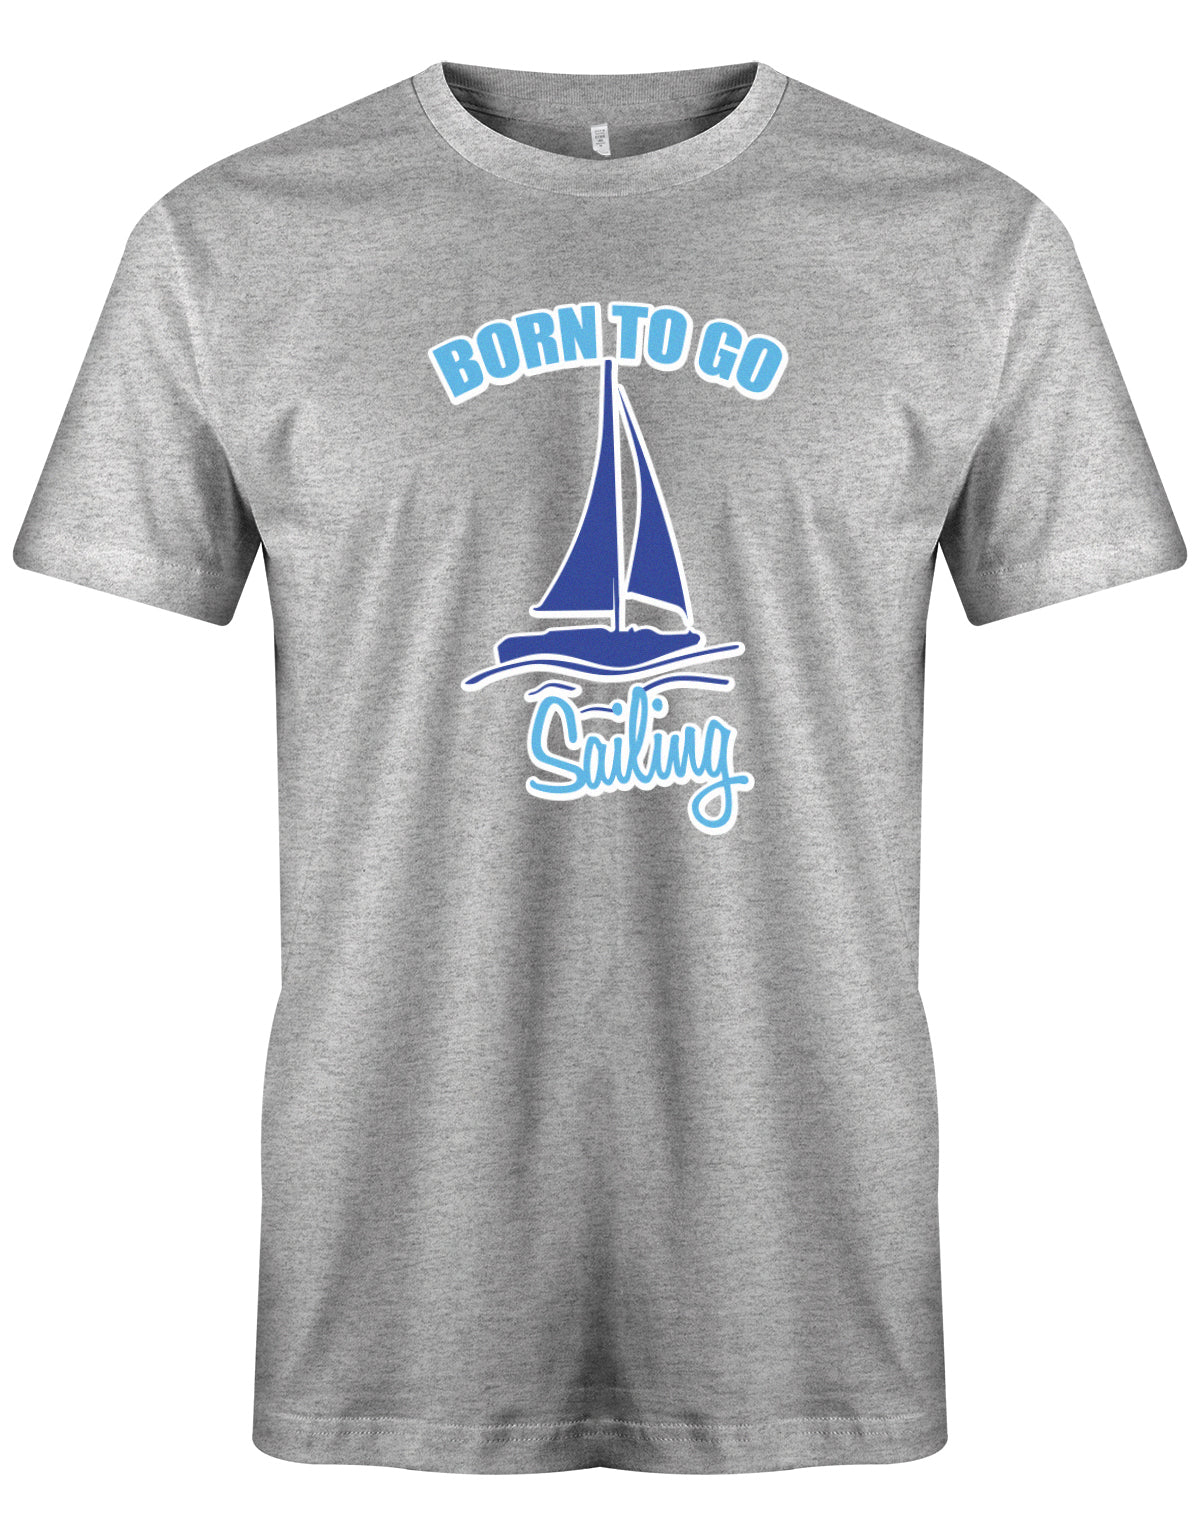 Das Segler t-shirt bedruckt mit "Born to go sailing - geboren um segeln zu gehen". Grau